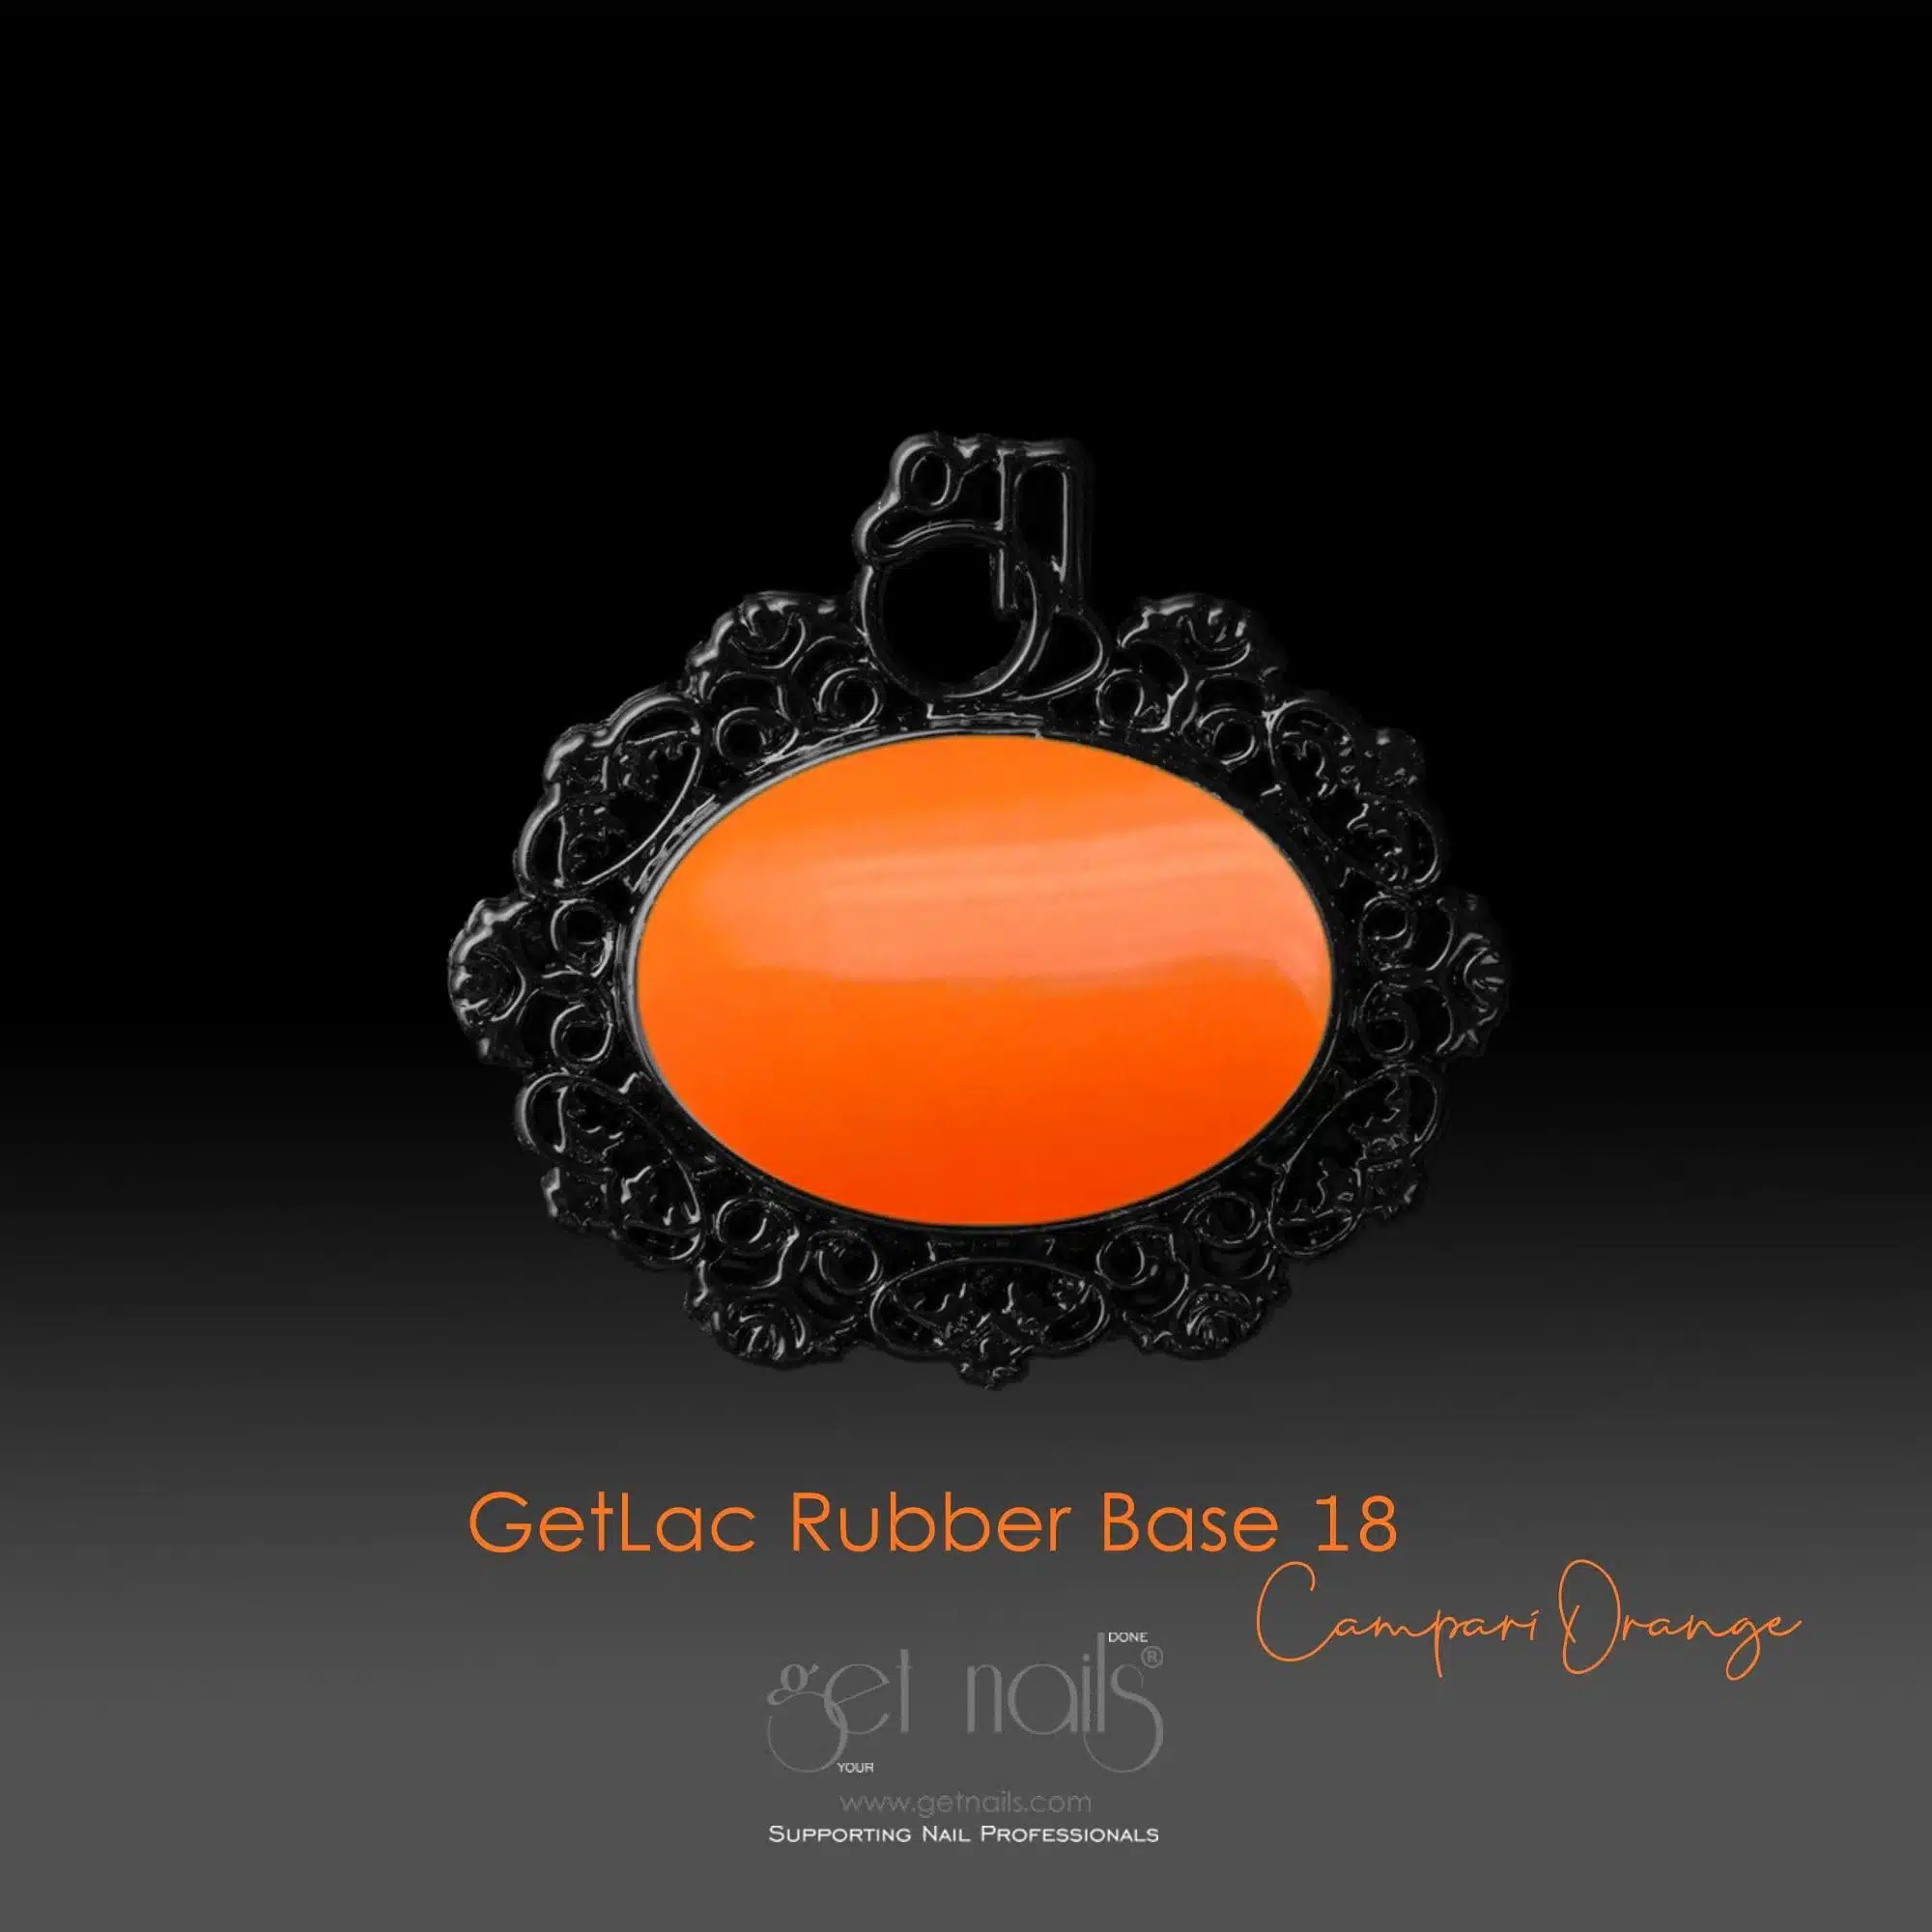 Get Nails Austria - GetLac Rubber Base 18 Campari Orange 15g